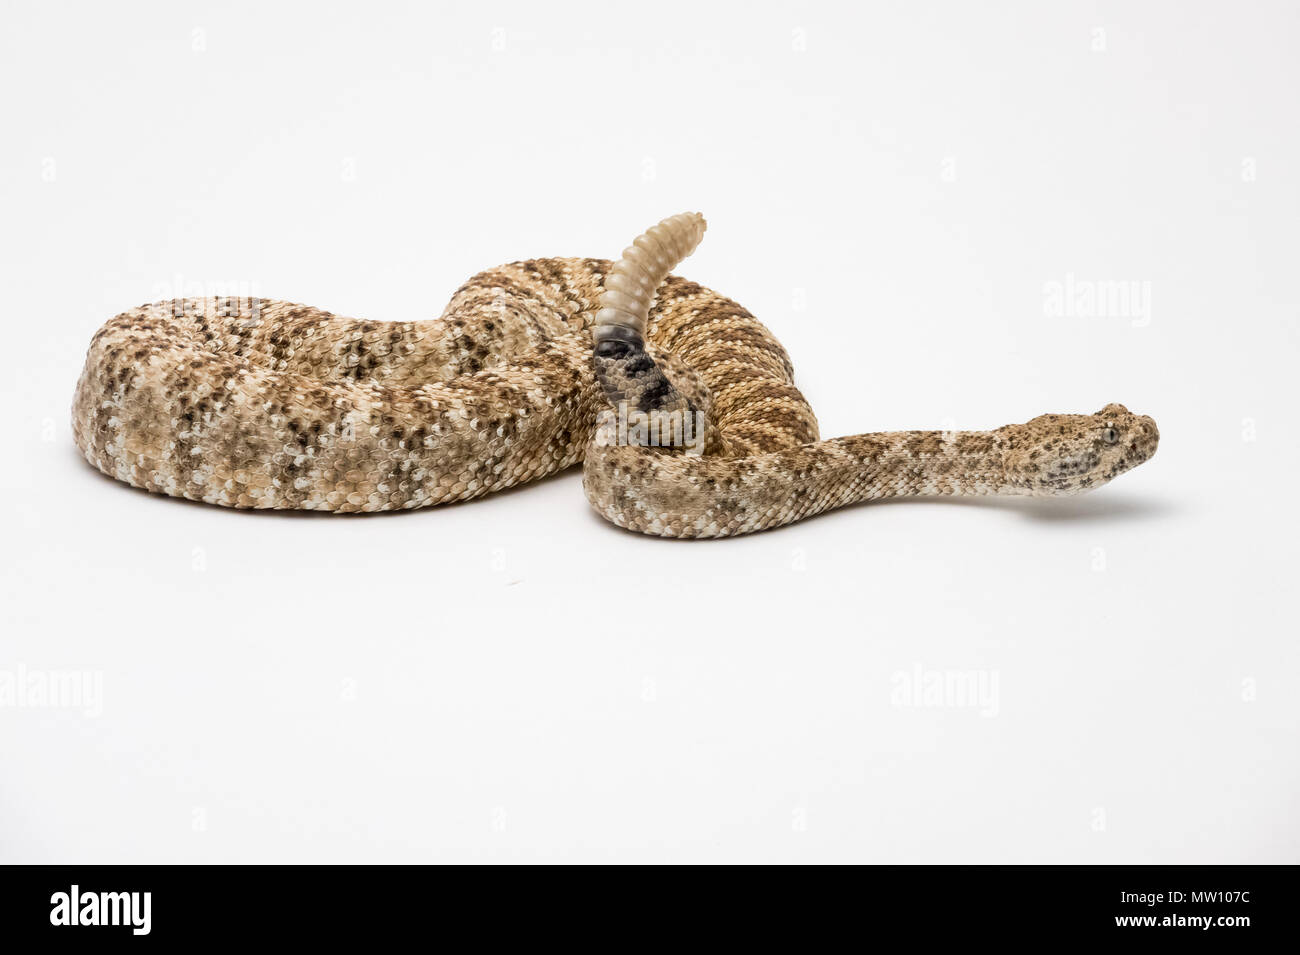 Speckled Rattlesnake on White Background Stock Photo